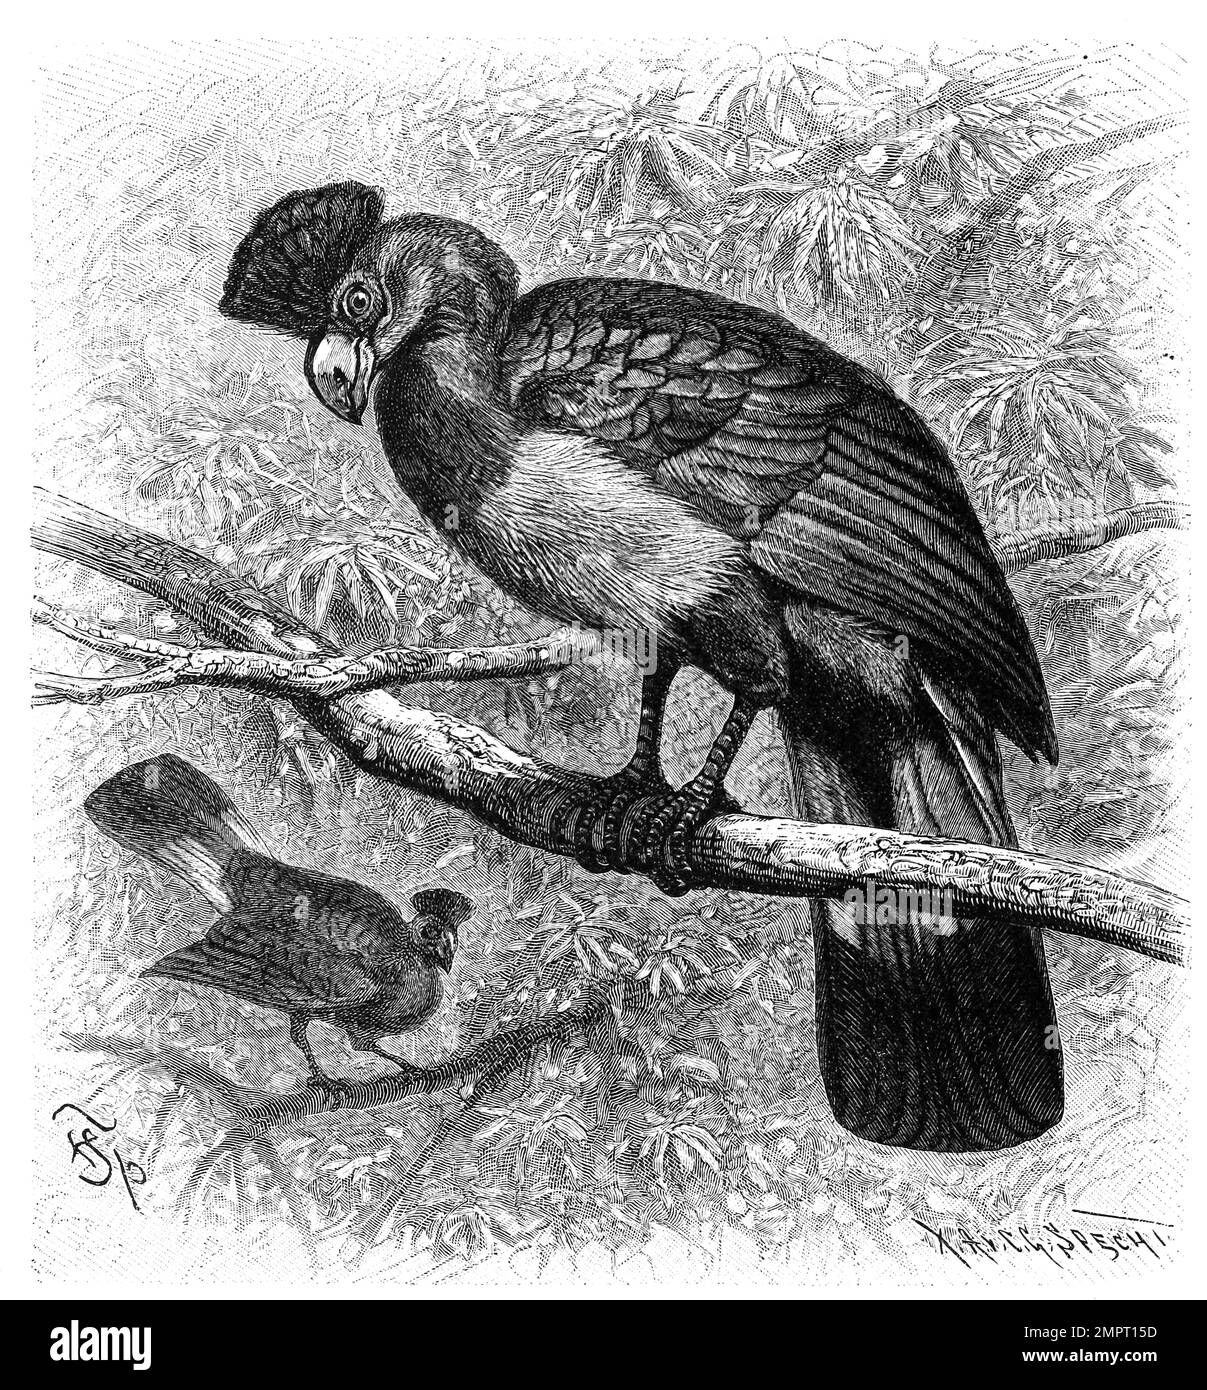 Vogel, Riesenturako, Corythaeola cristata, die größte Turakoart, Historisch, digital restaurierte Reproduktion von einer Vorlage aus dem 18. Jahrhundert Stock Photo